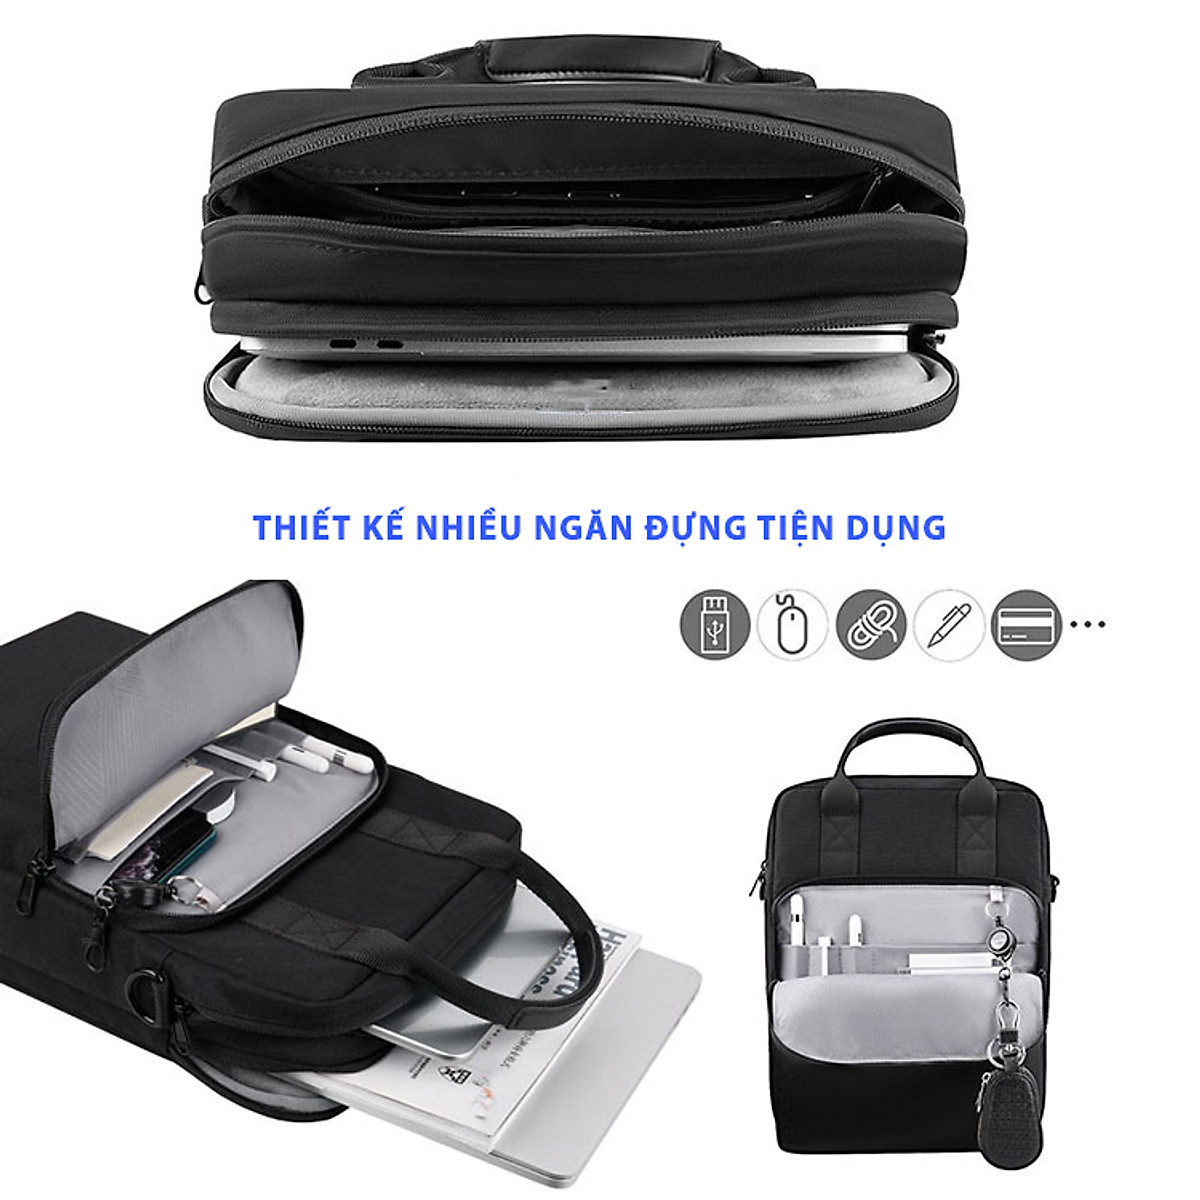 Túi đeo dọc dành cho Laptop, Macbook, iPad 13 inch Vertical Pro - Chống sốc, Chống Nước - Hàng Chính Hãng